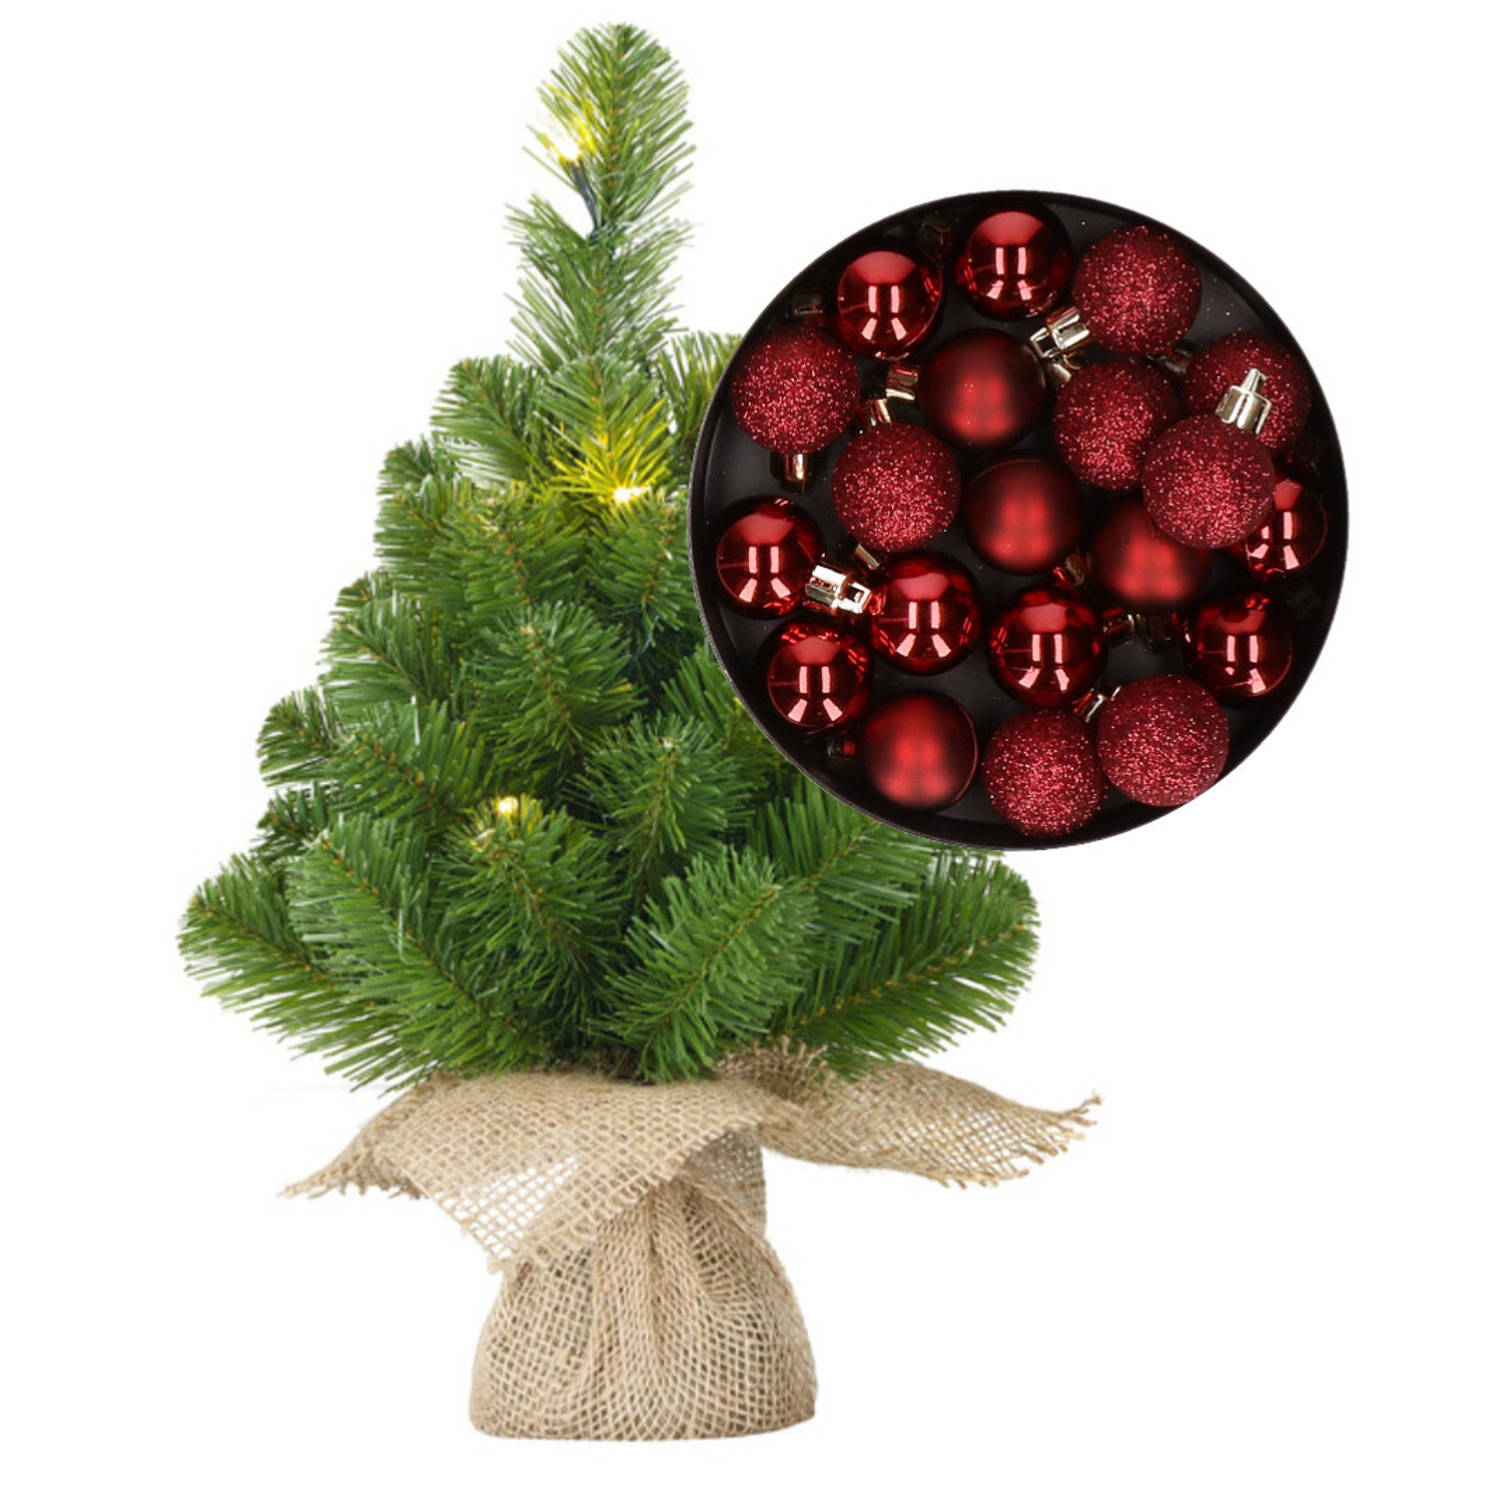 Mini kerstboom-kunstboom met verlichting 45 cm en inclusief kerstballen donkerrood Kunstkerstboom